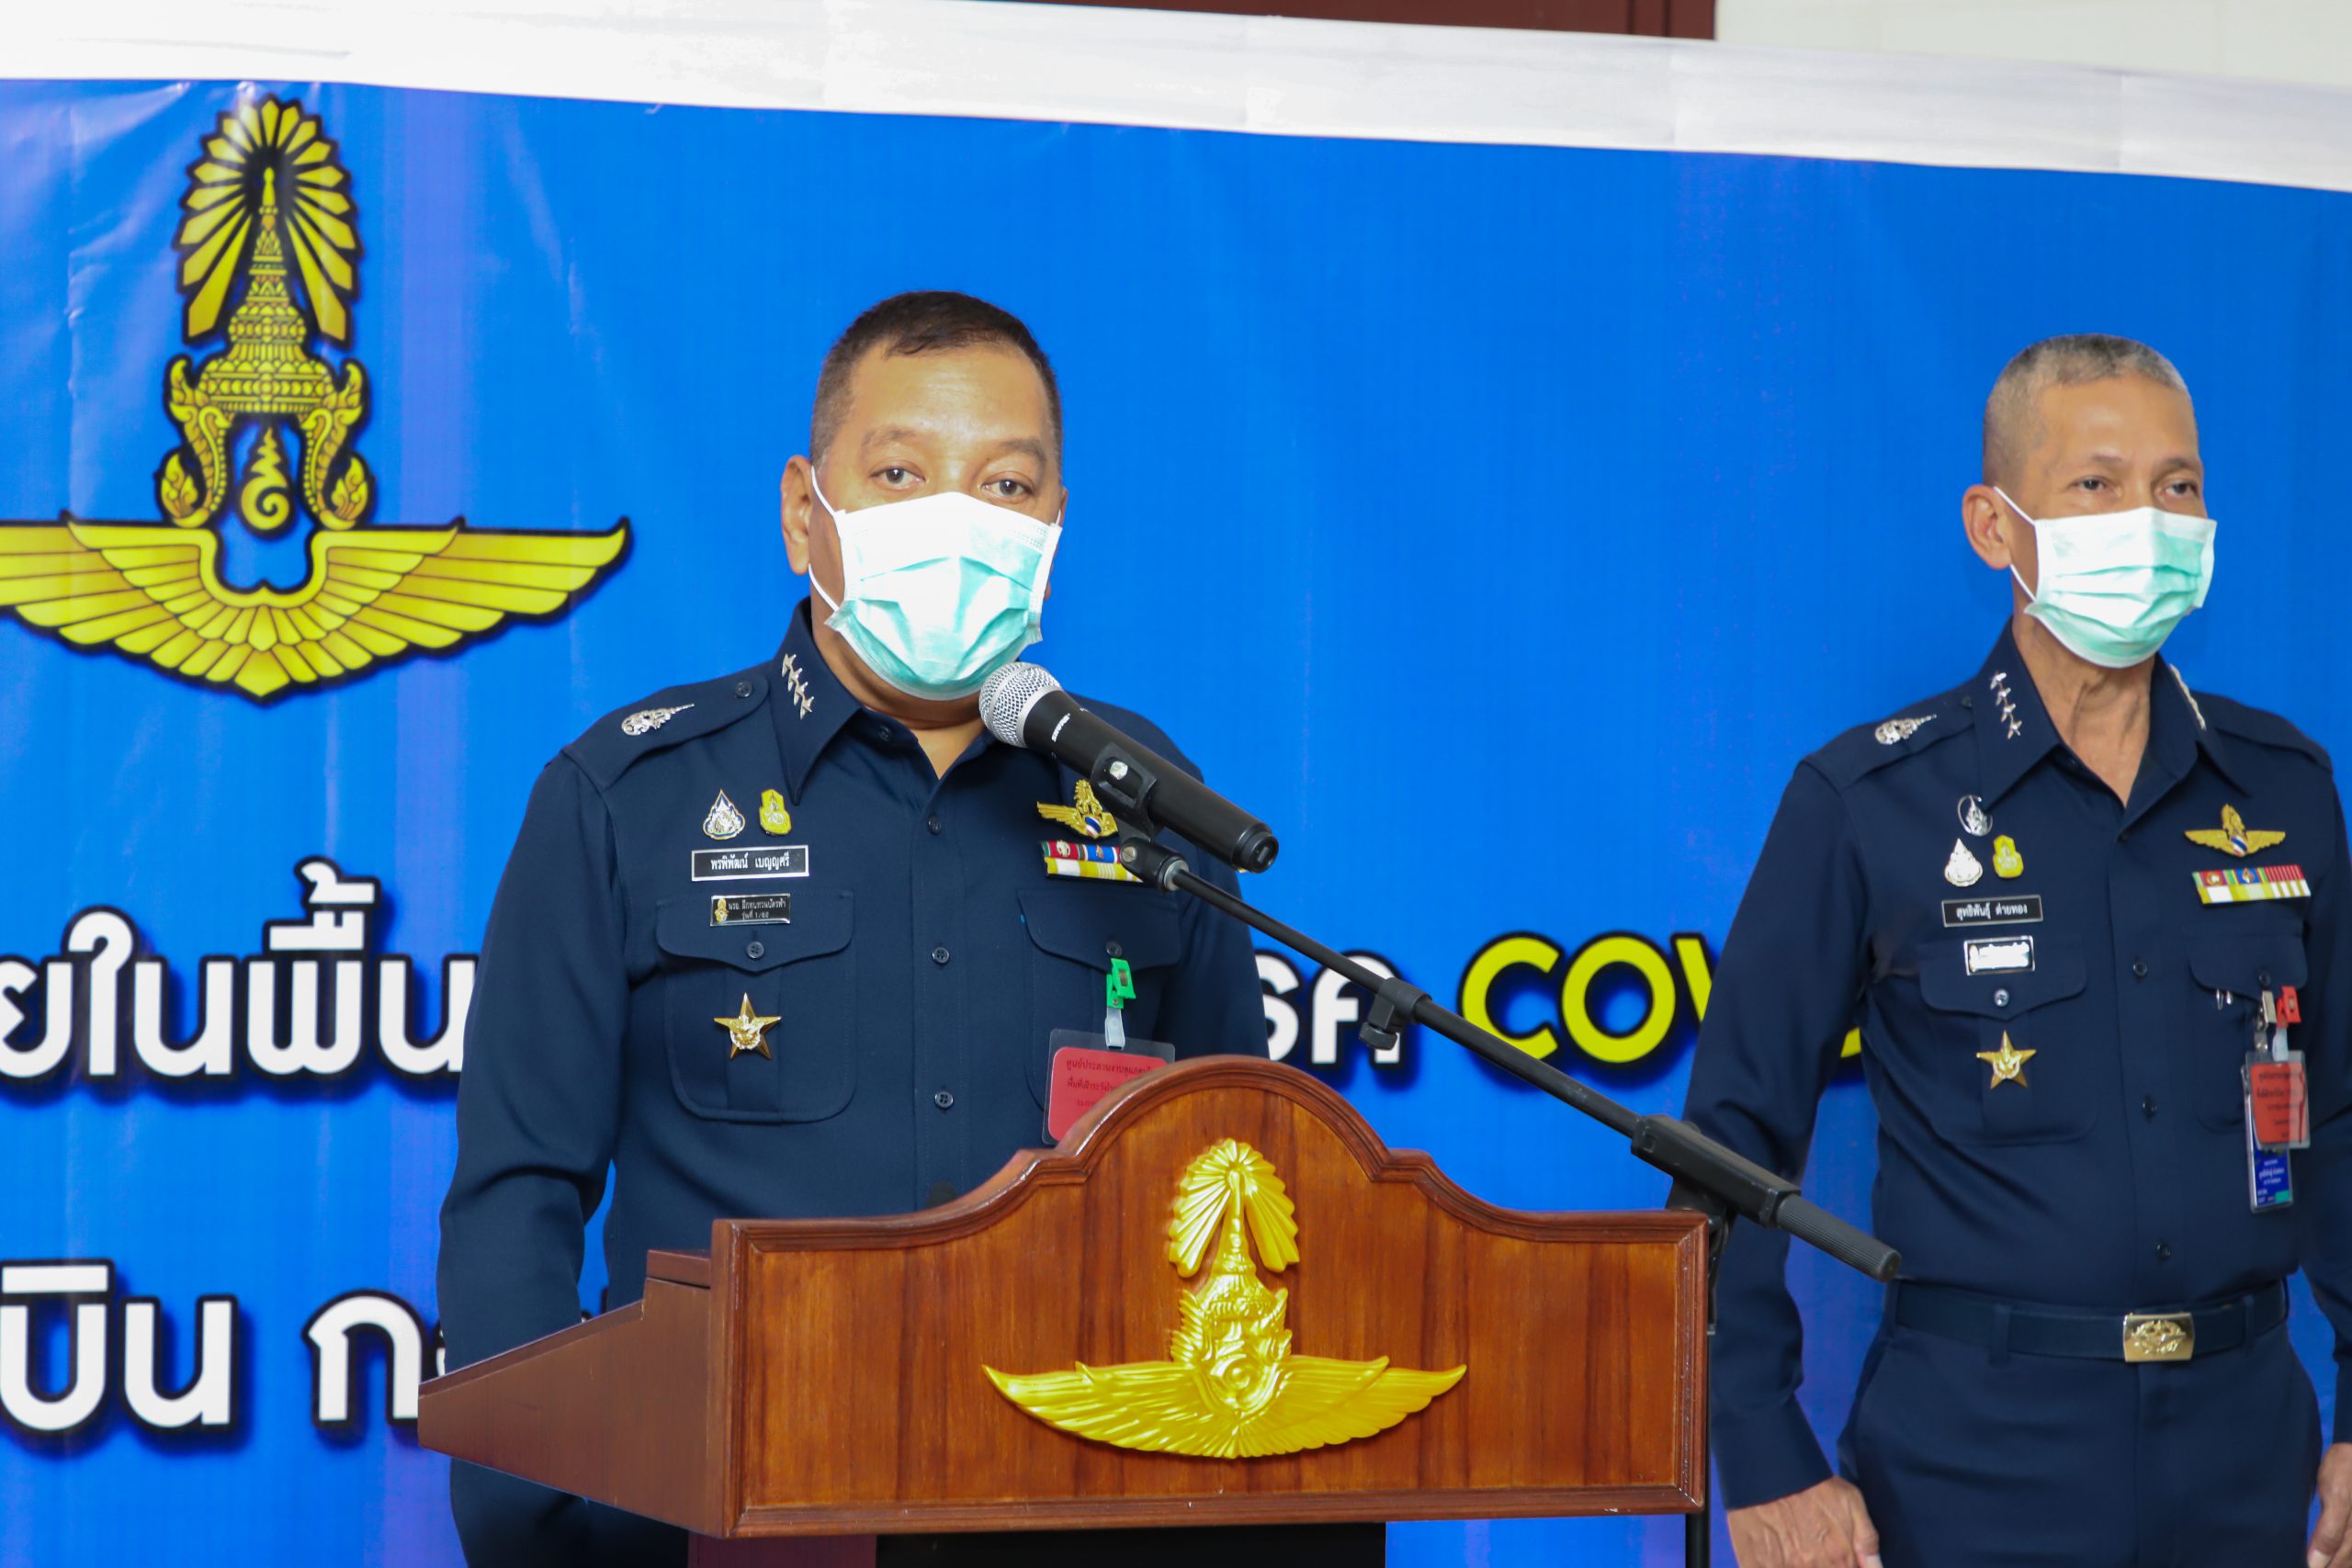 ผู้บัญชาการทหารสูงสุด ตรวจเยี่ยม State Quarantine ณ ศูนย์ประสานงานดูแลคนไทยในพื้นที่เฝ้าระวังโรค Covid-19 ณ โรงเรียนการบิน จังหวัดนครปฐม